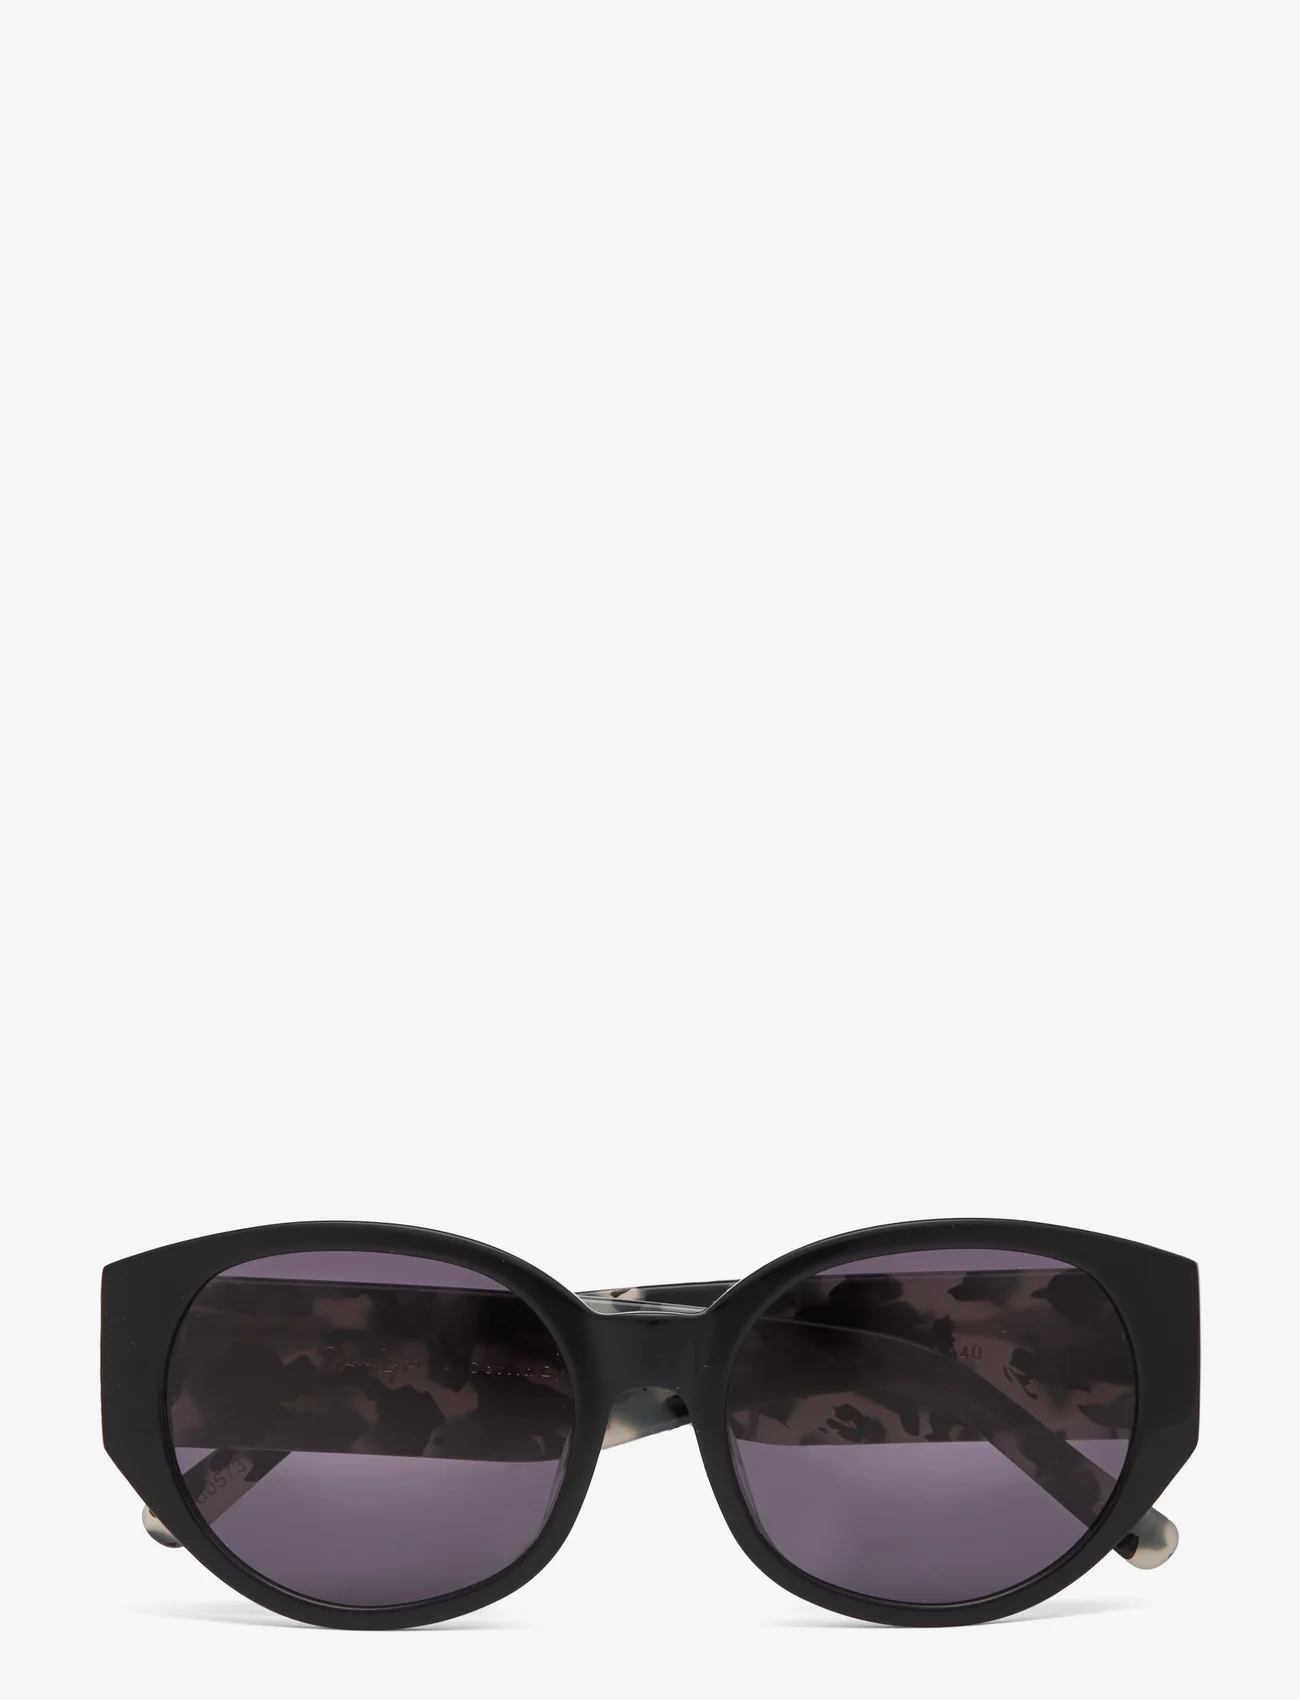 Corlin Eyewear - Windy Black/Grey - runde solbriller - multi coloured - 0